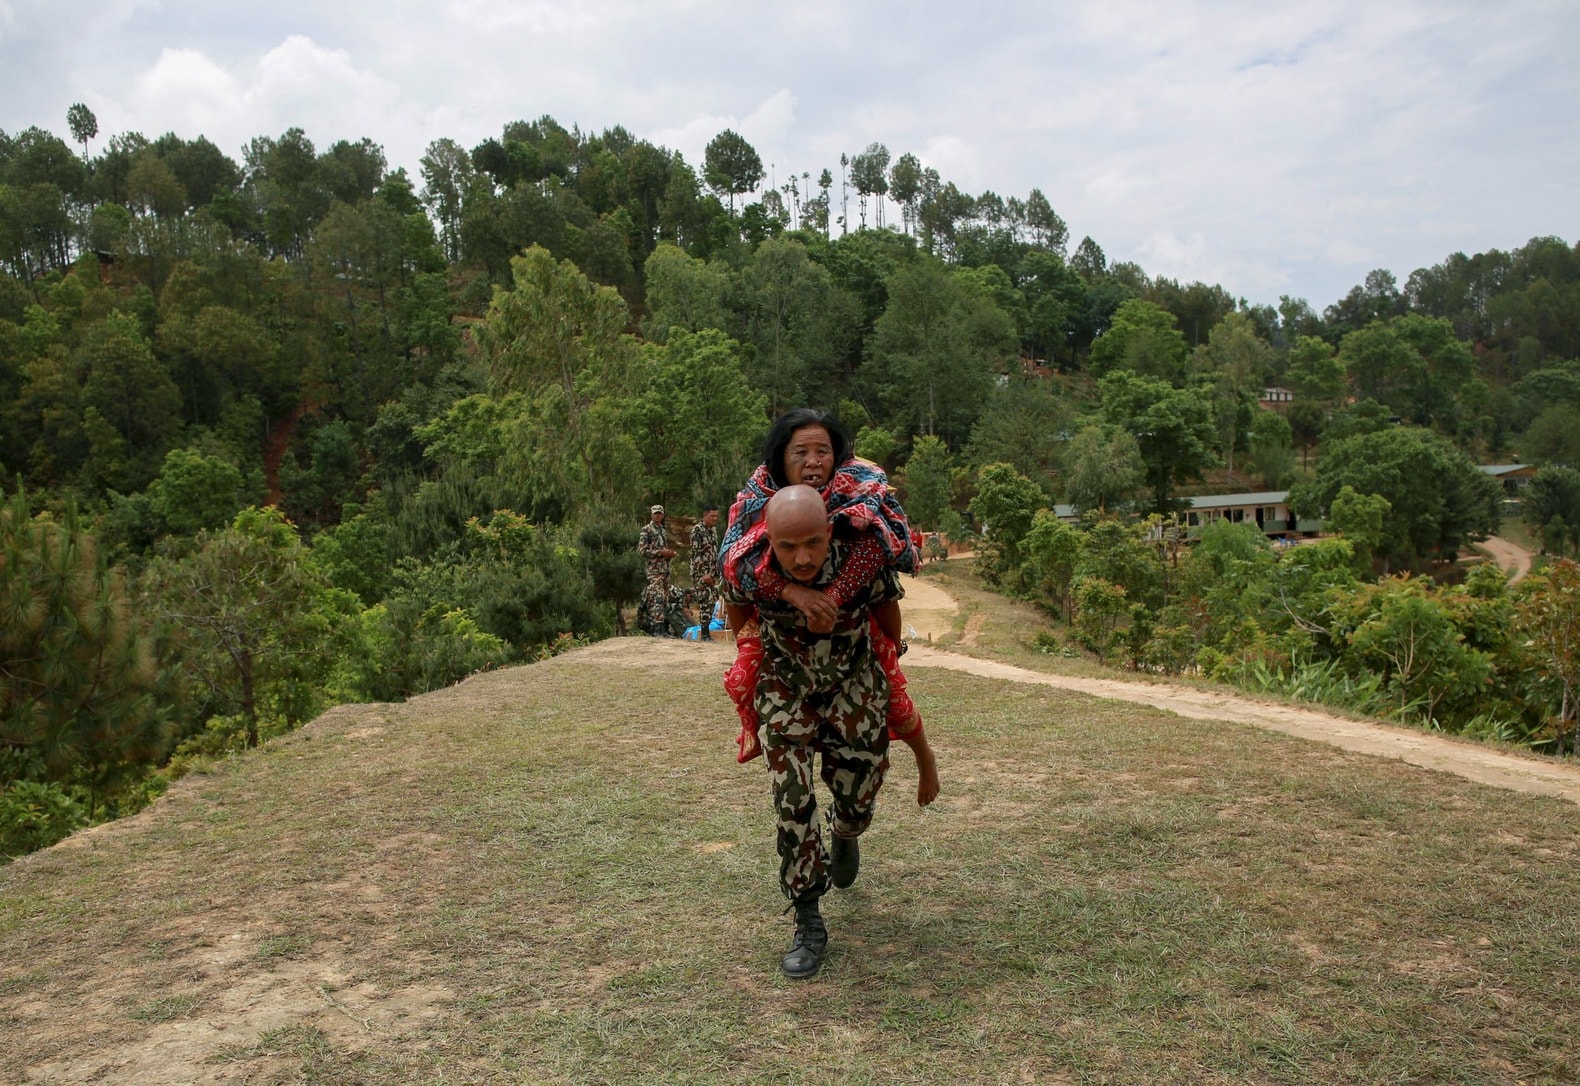 Wat vond u het meest opvallend aan het nieuws over de aardbeving in Nepal?